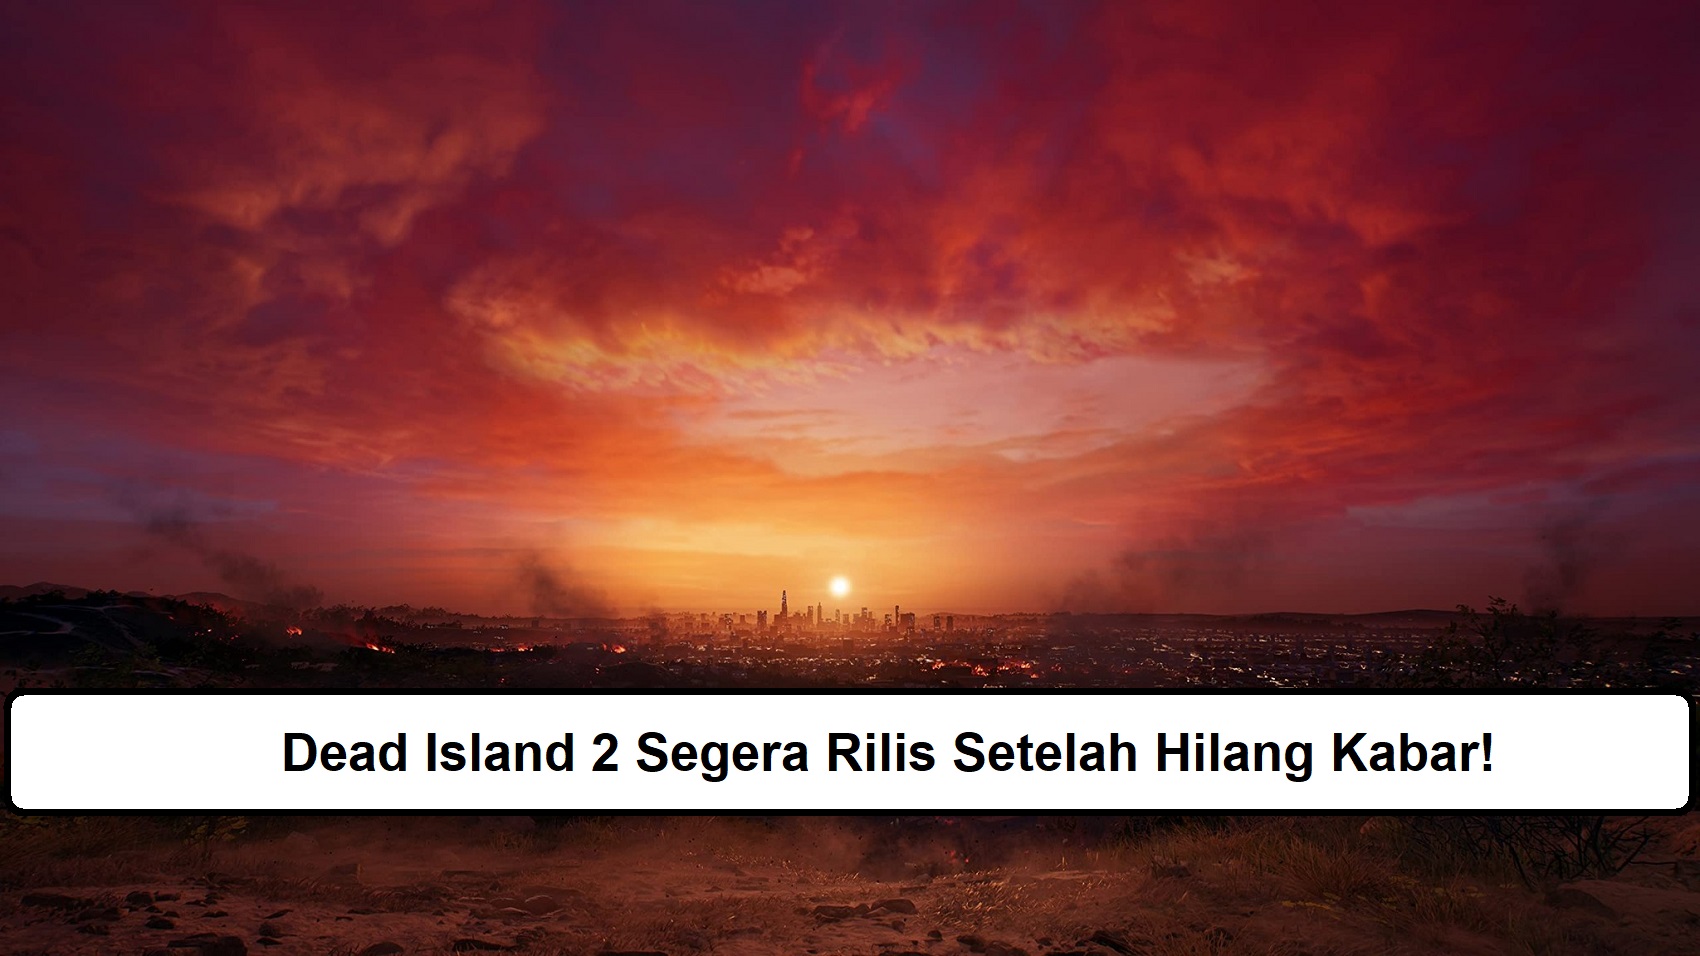 Dead Island 2 Segera Rilis Setelah Hilang Kabar!